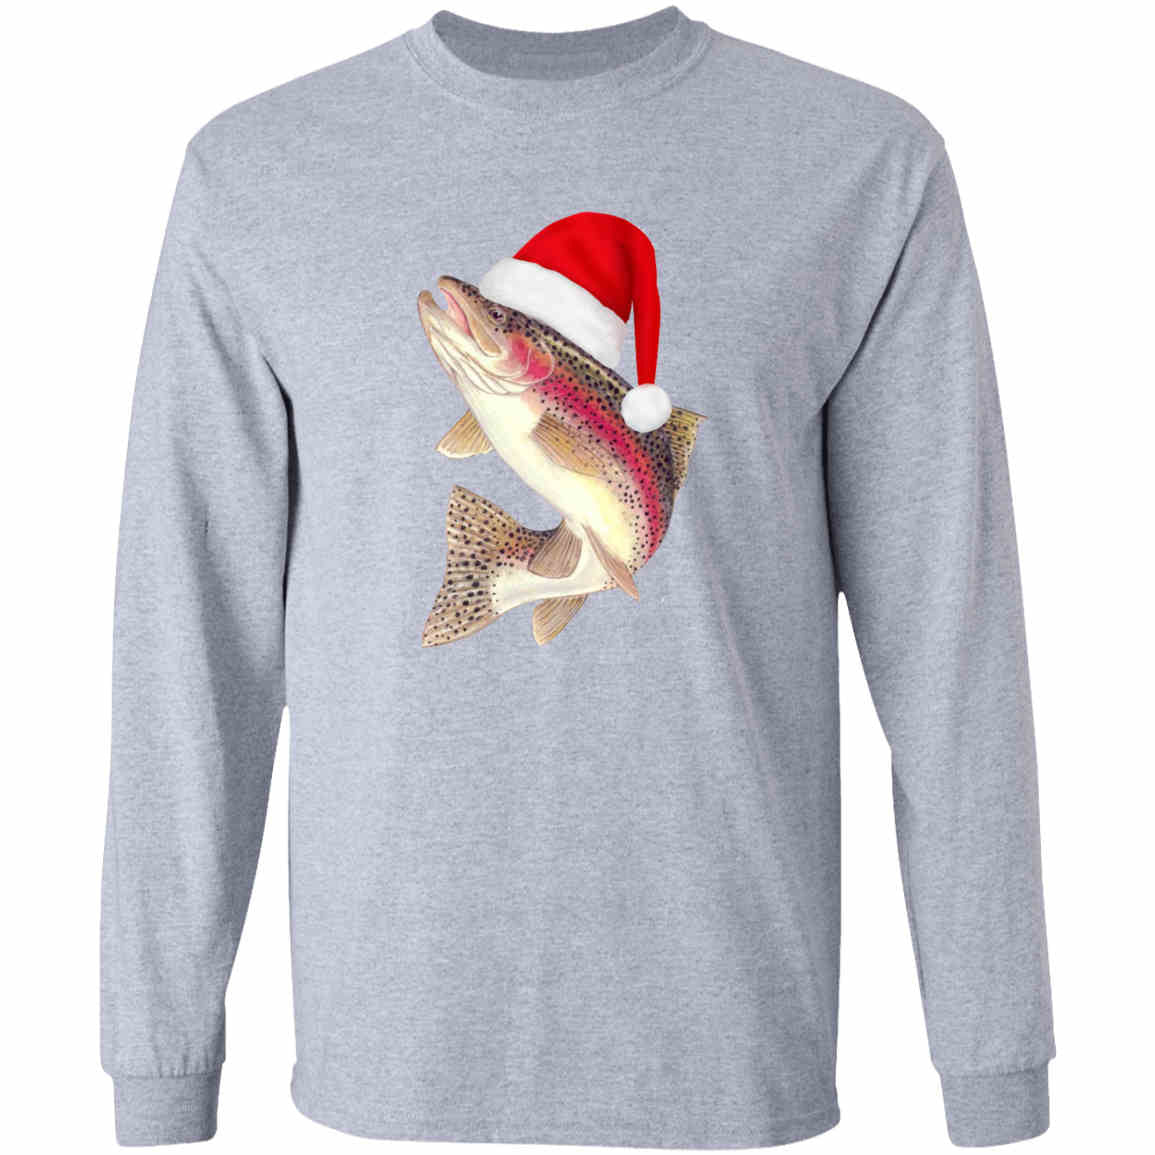 Santa fish long sleeve t-shirt sport-grey